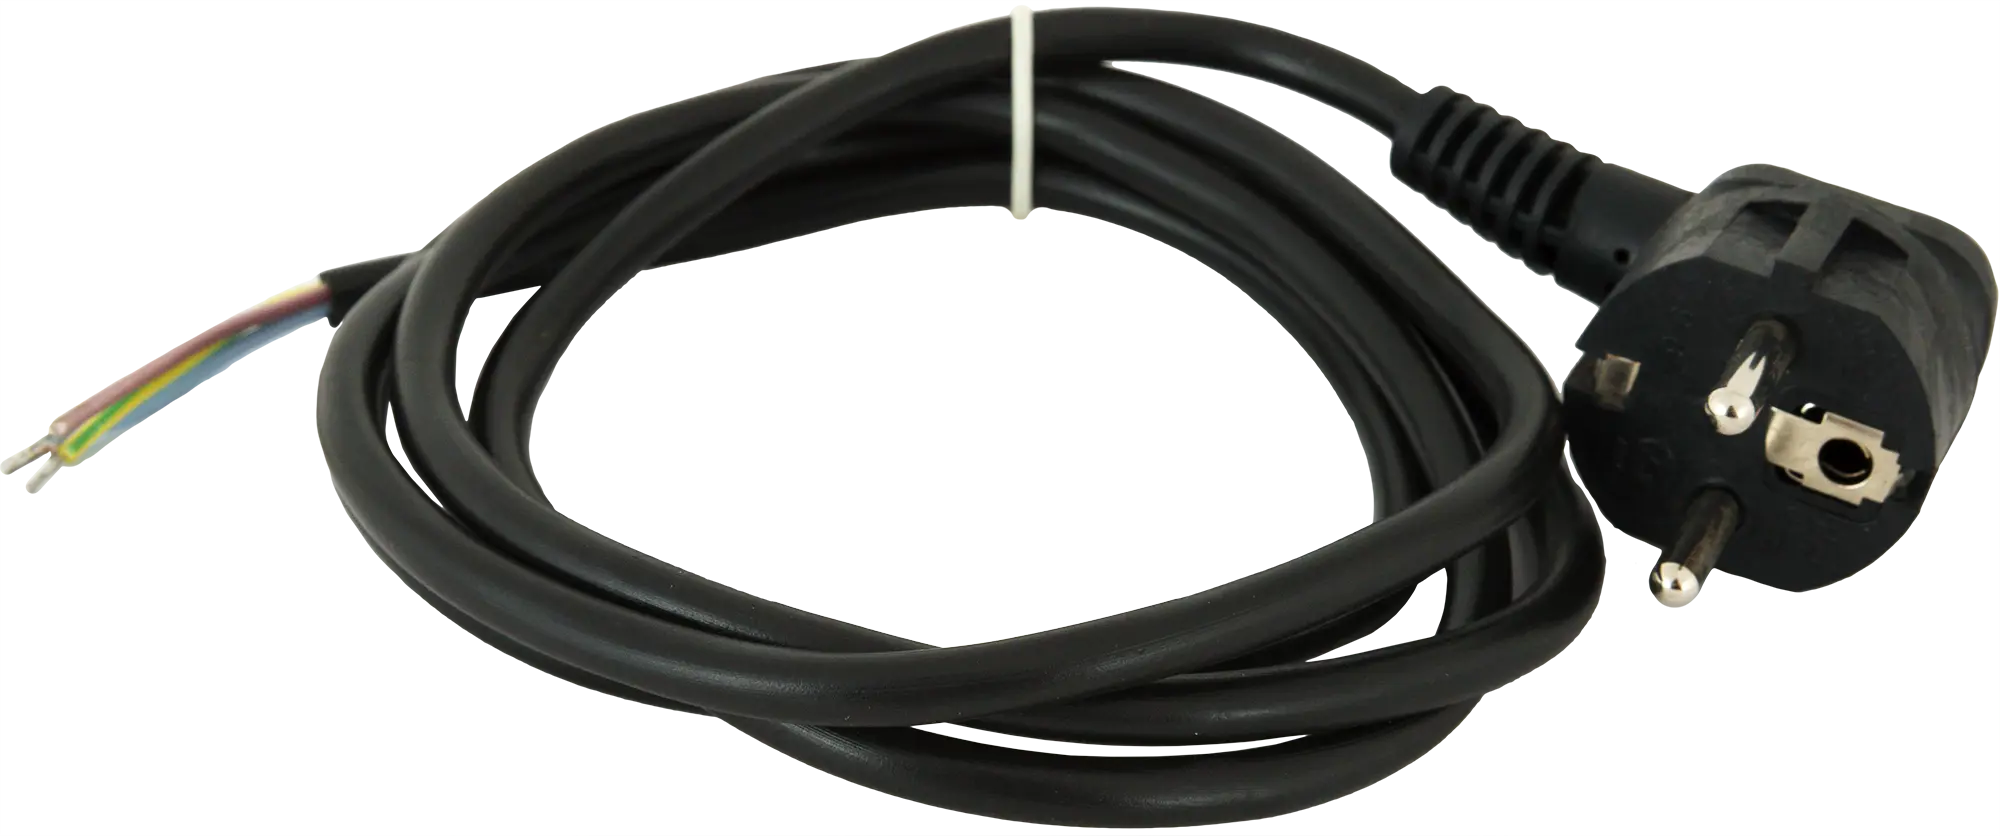 Шнур сетевой с заземлением 16 A 1.5 м цвет чёрный шнур сетевой с заземлением 16 a 3 м цвет чёрный